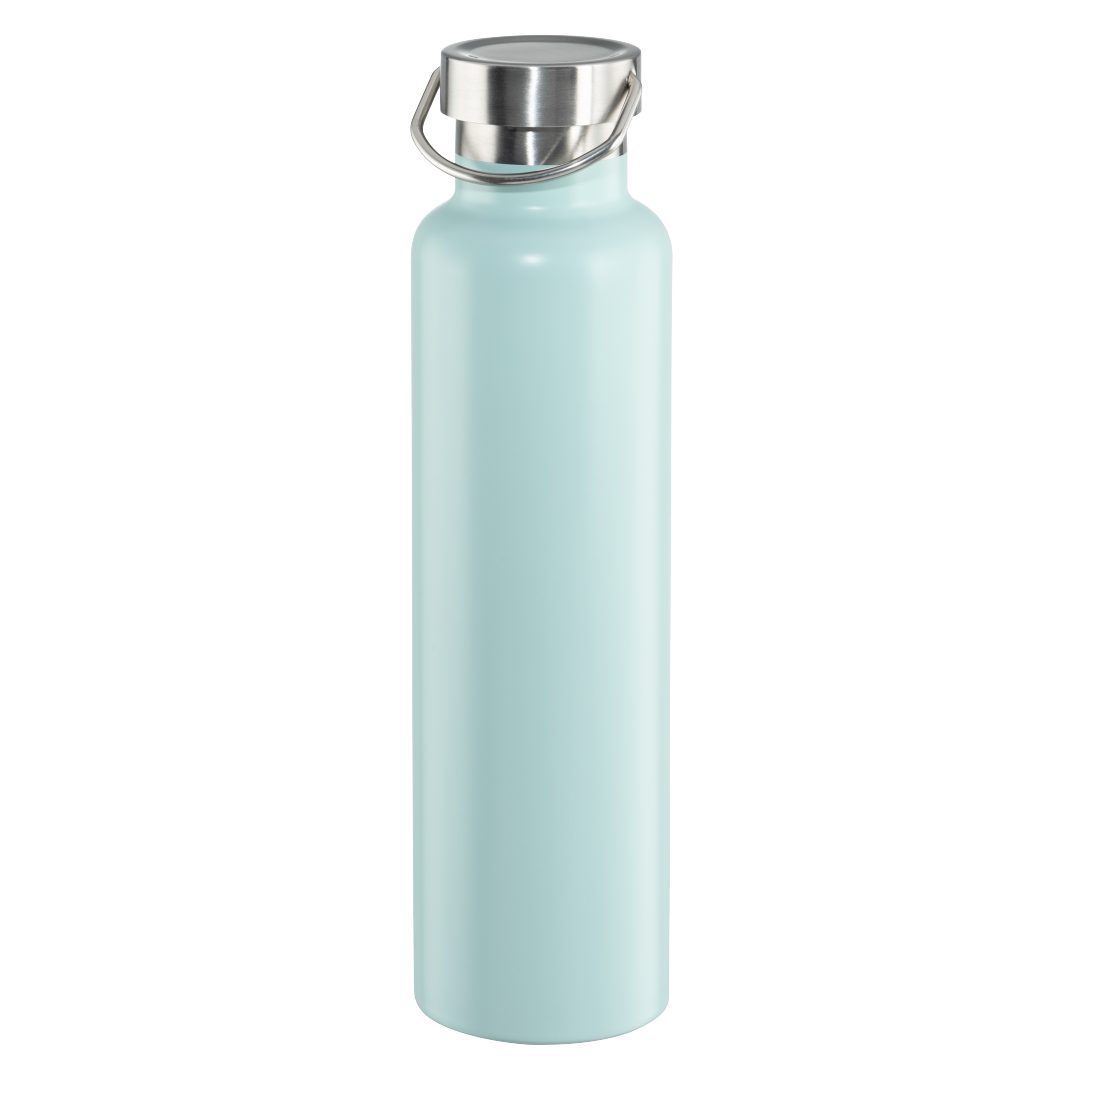 abx3 Druckfähige Abbildung 3 - Xavax, Trinkflasche, 750 ml, Drehverschluss, auslaufsicher, kohlensäurefest, Blau